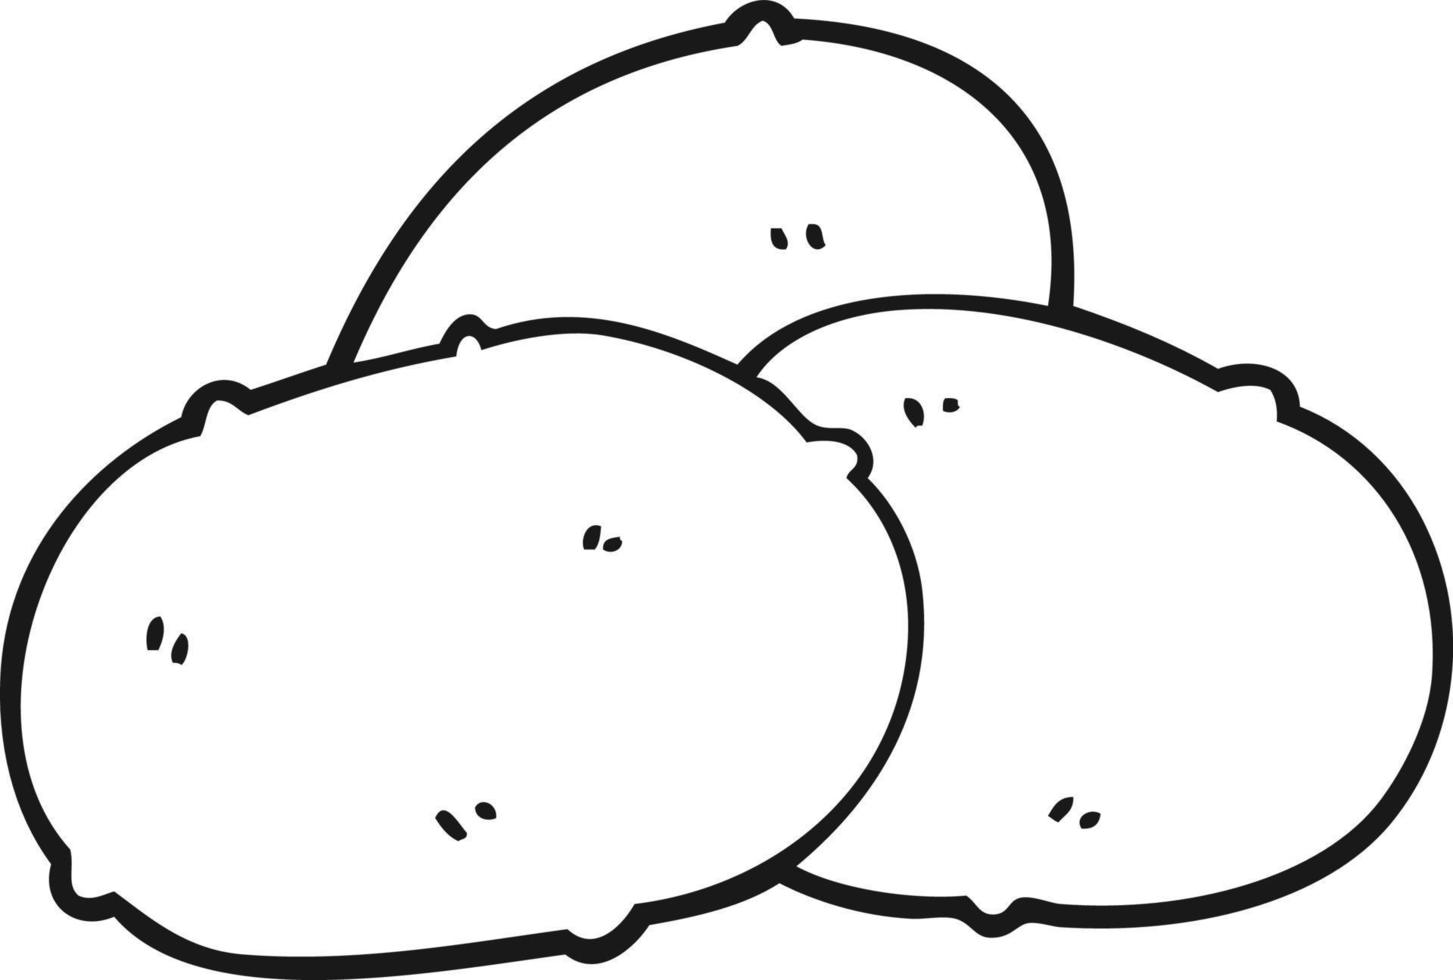 Strichzeichnung Cartoon-Kartoffeln vektor